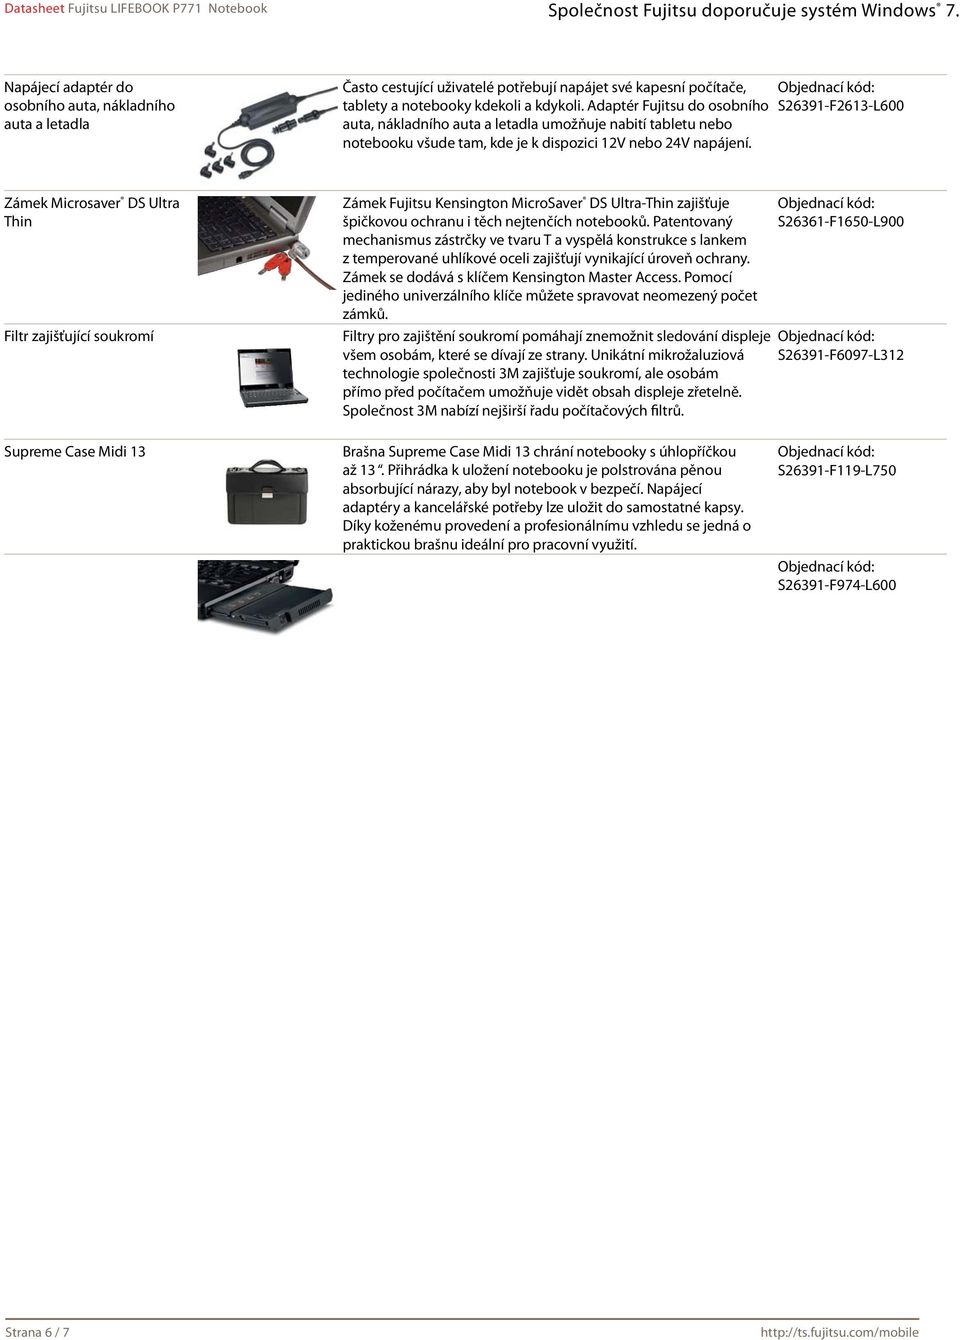 S26391-F2613-L600 Zámek Microsaver DS Ultra Thin Filtr zajišťující soukromí Zámek Fujitsu Kensington MicroSaver DS Ultra-Thin zajišťuje špičkovou ochranu i těch nejtenčích notebooků.